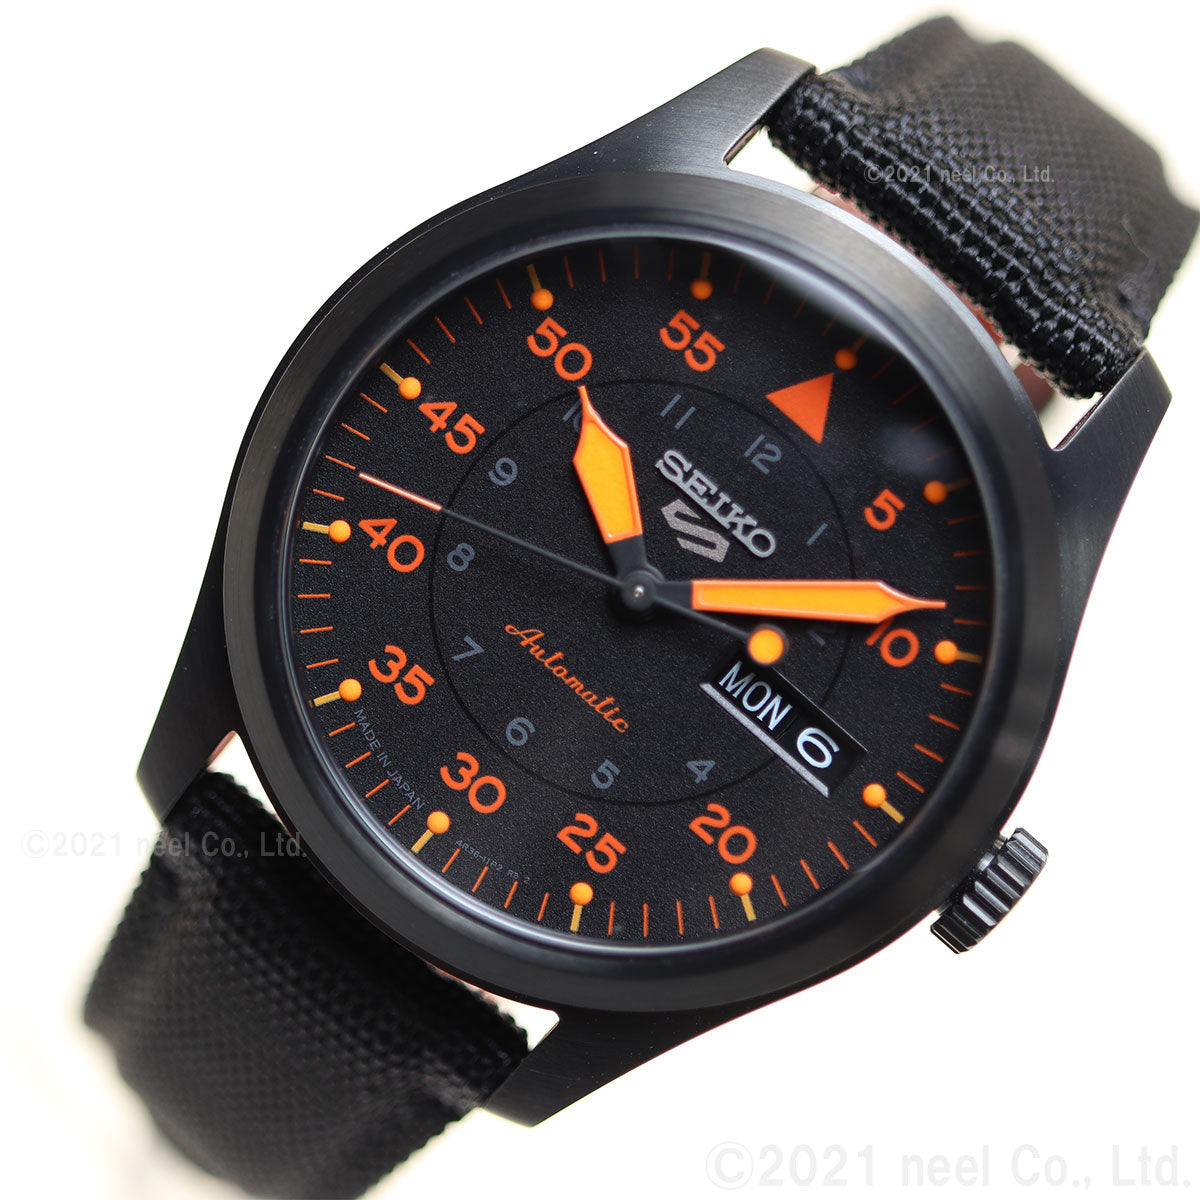 セイコー5 スポーツ SEIKO 5 SPORTS 自動巻き メカニカル 流通限定モデル 腕時計 メンズ セイコーファイブ ストリート Street SBSA143